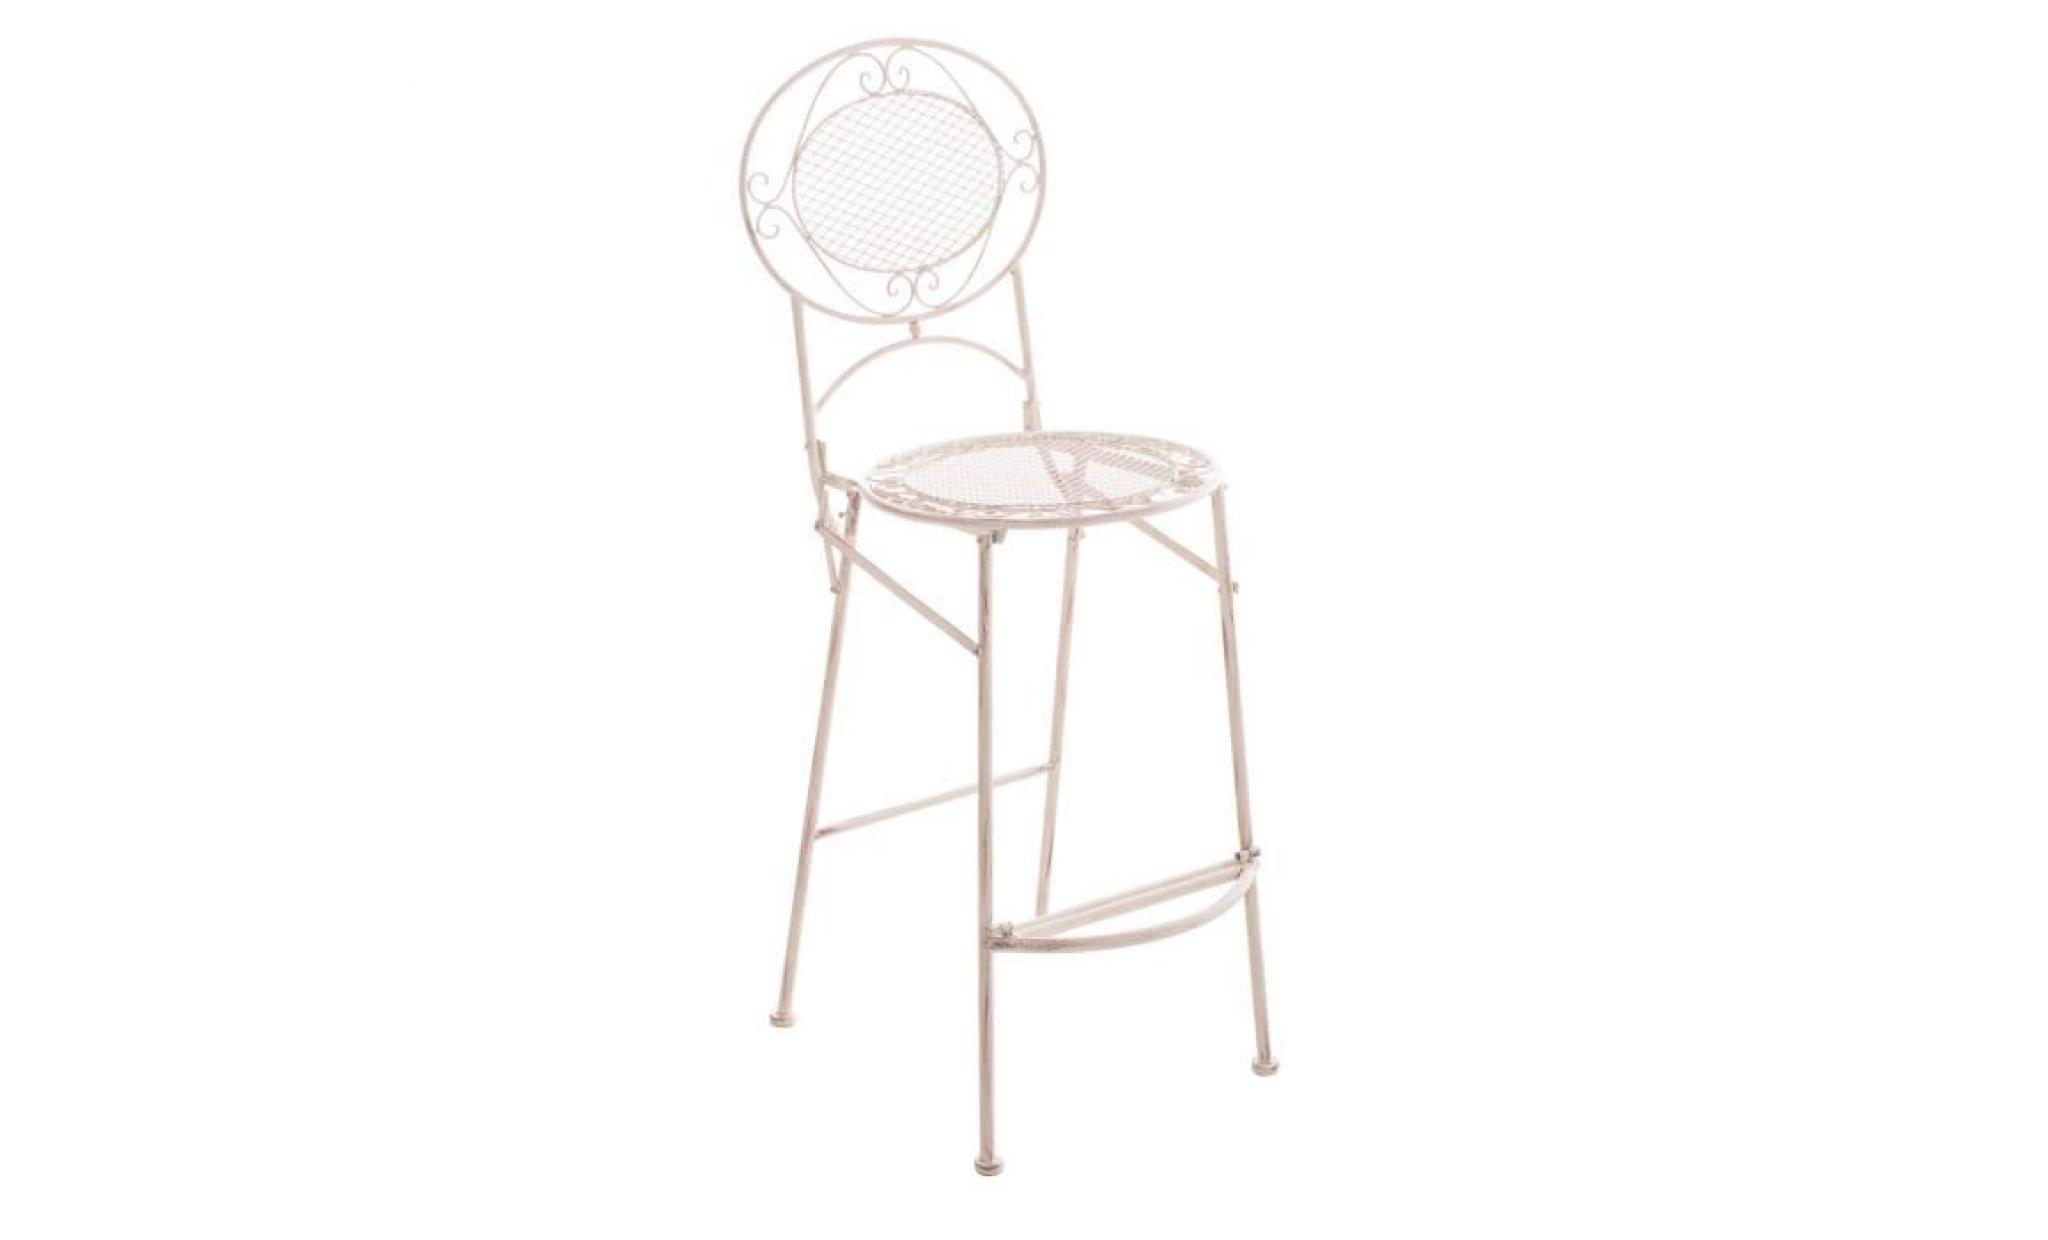 clp chaise /tabouret de bar de jardin nostalgique nadia au design romantique, fer forgé fait à la main, pliable, plusieurs couleu...